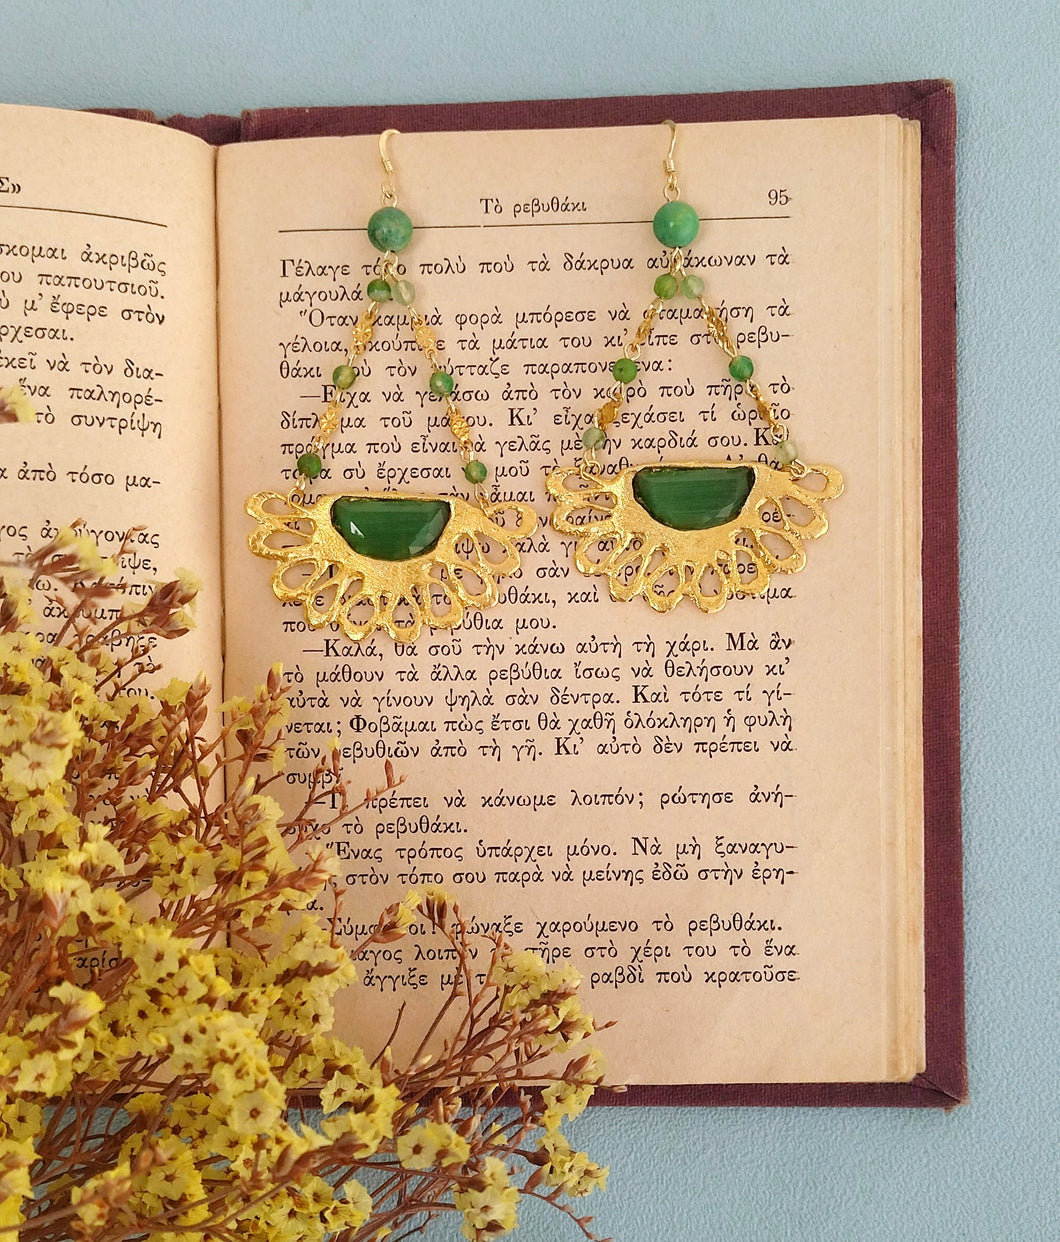 Gold Statement Chandelier Earrings, Long Green Jade Gemstone Earrings